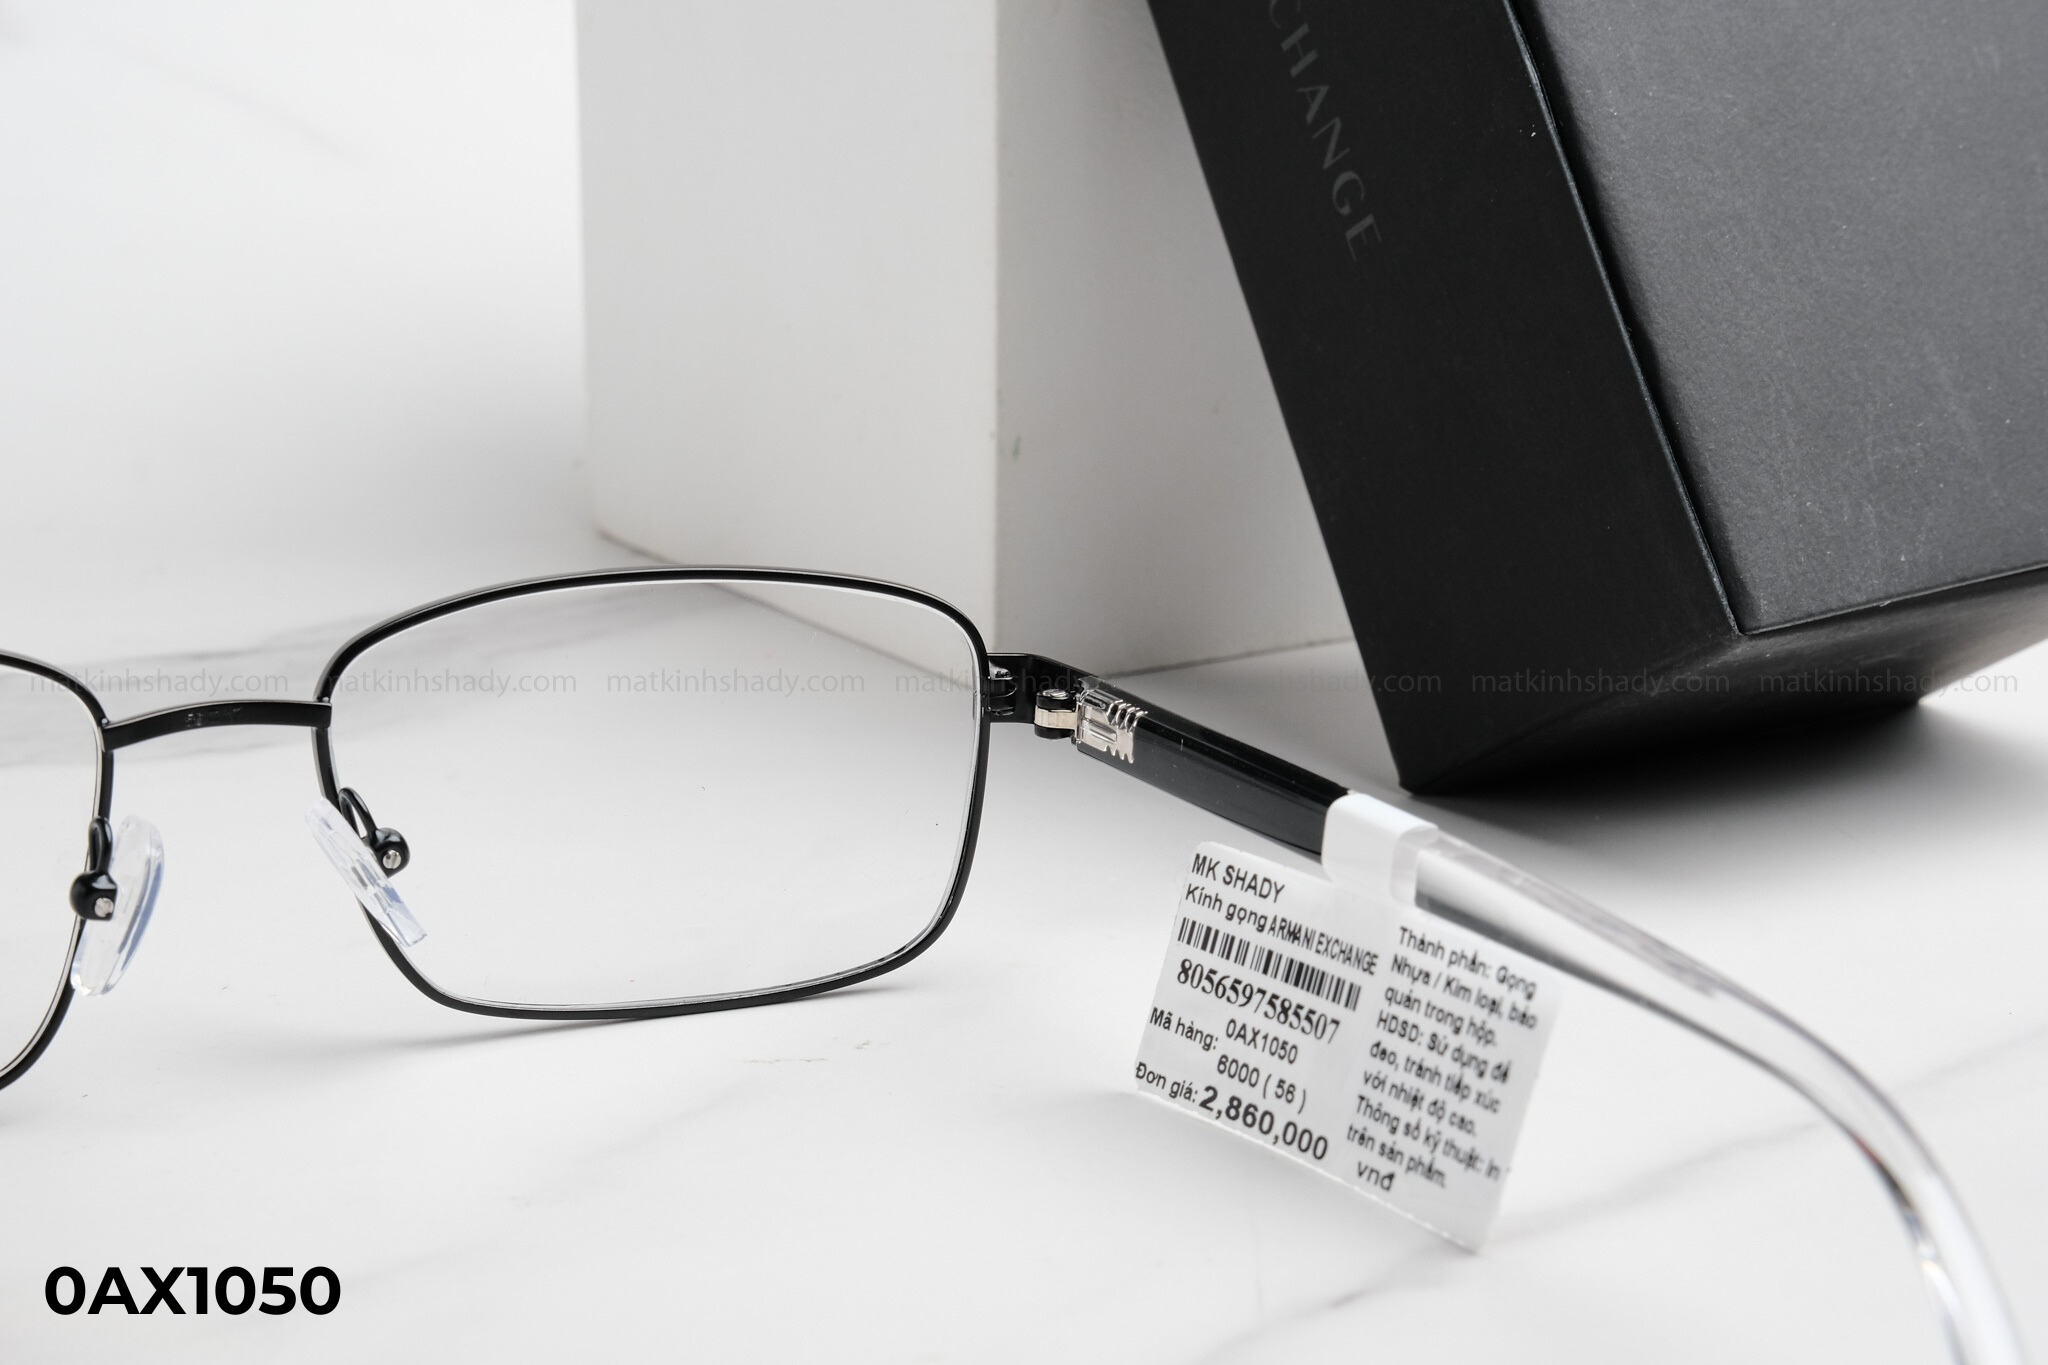  Armani Exchange Eyewear - Glasses - 0AX1050 